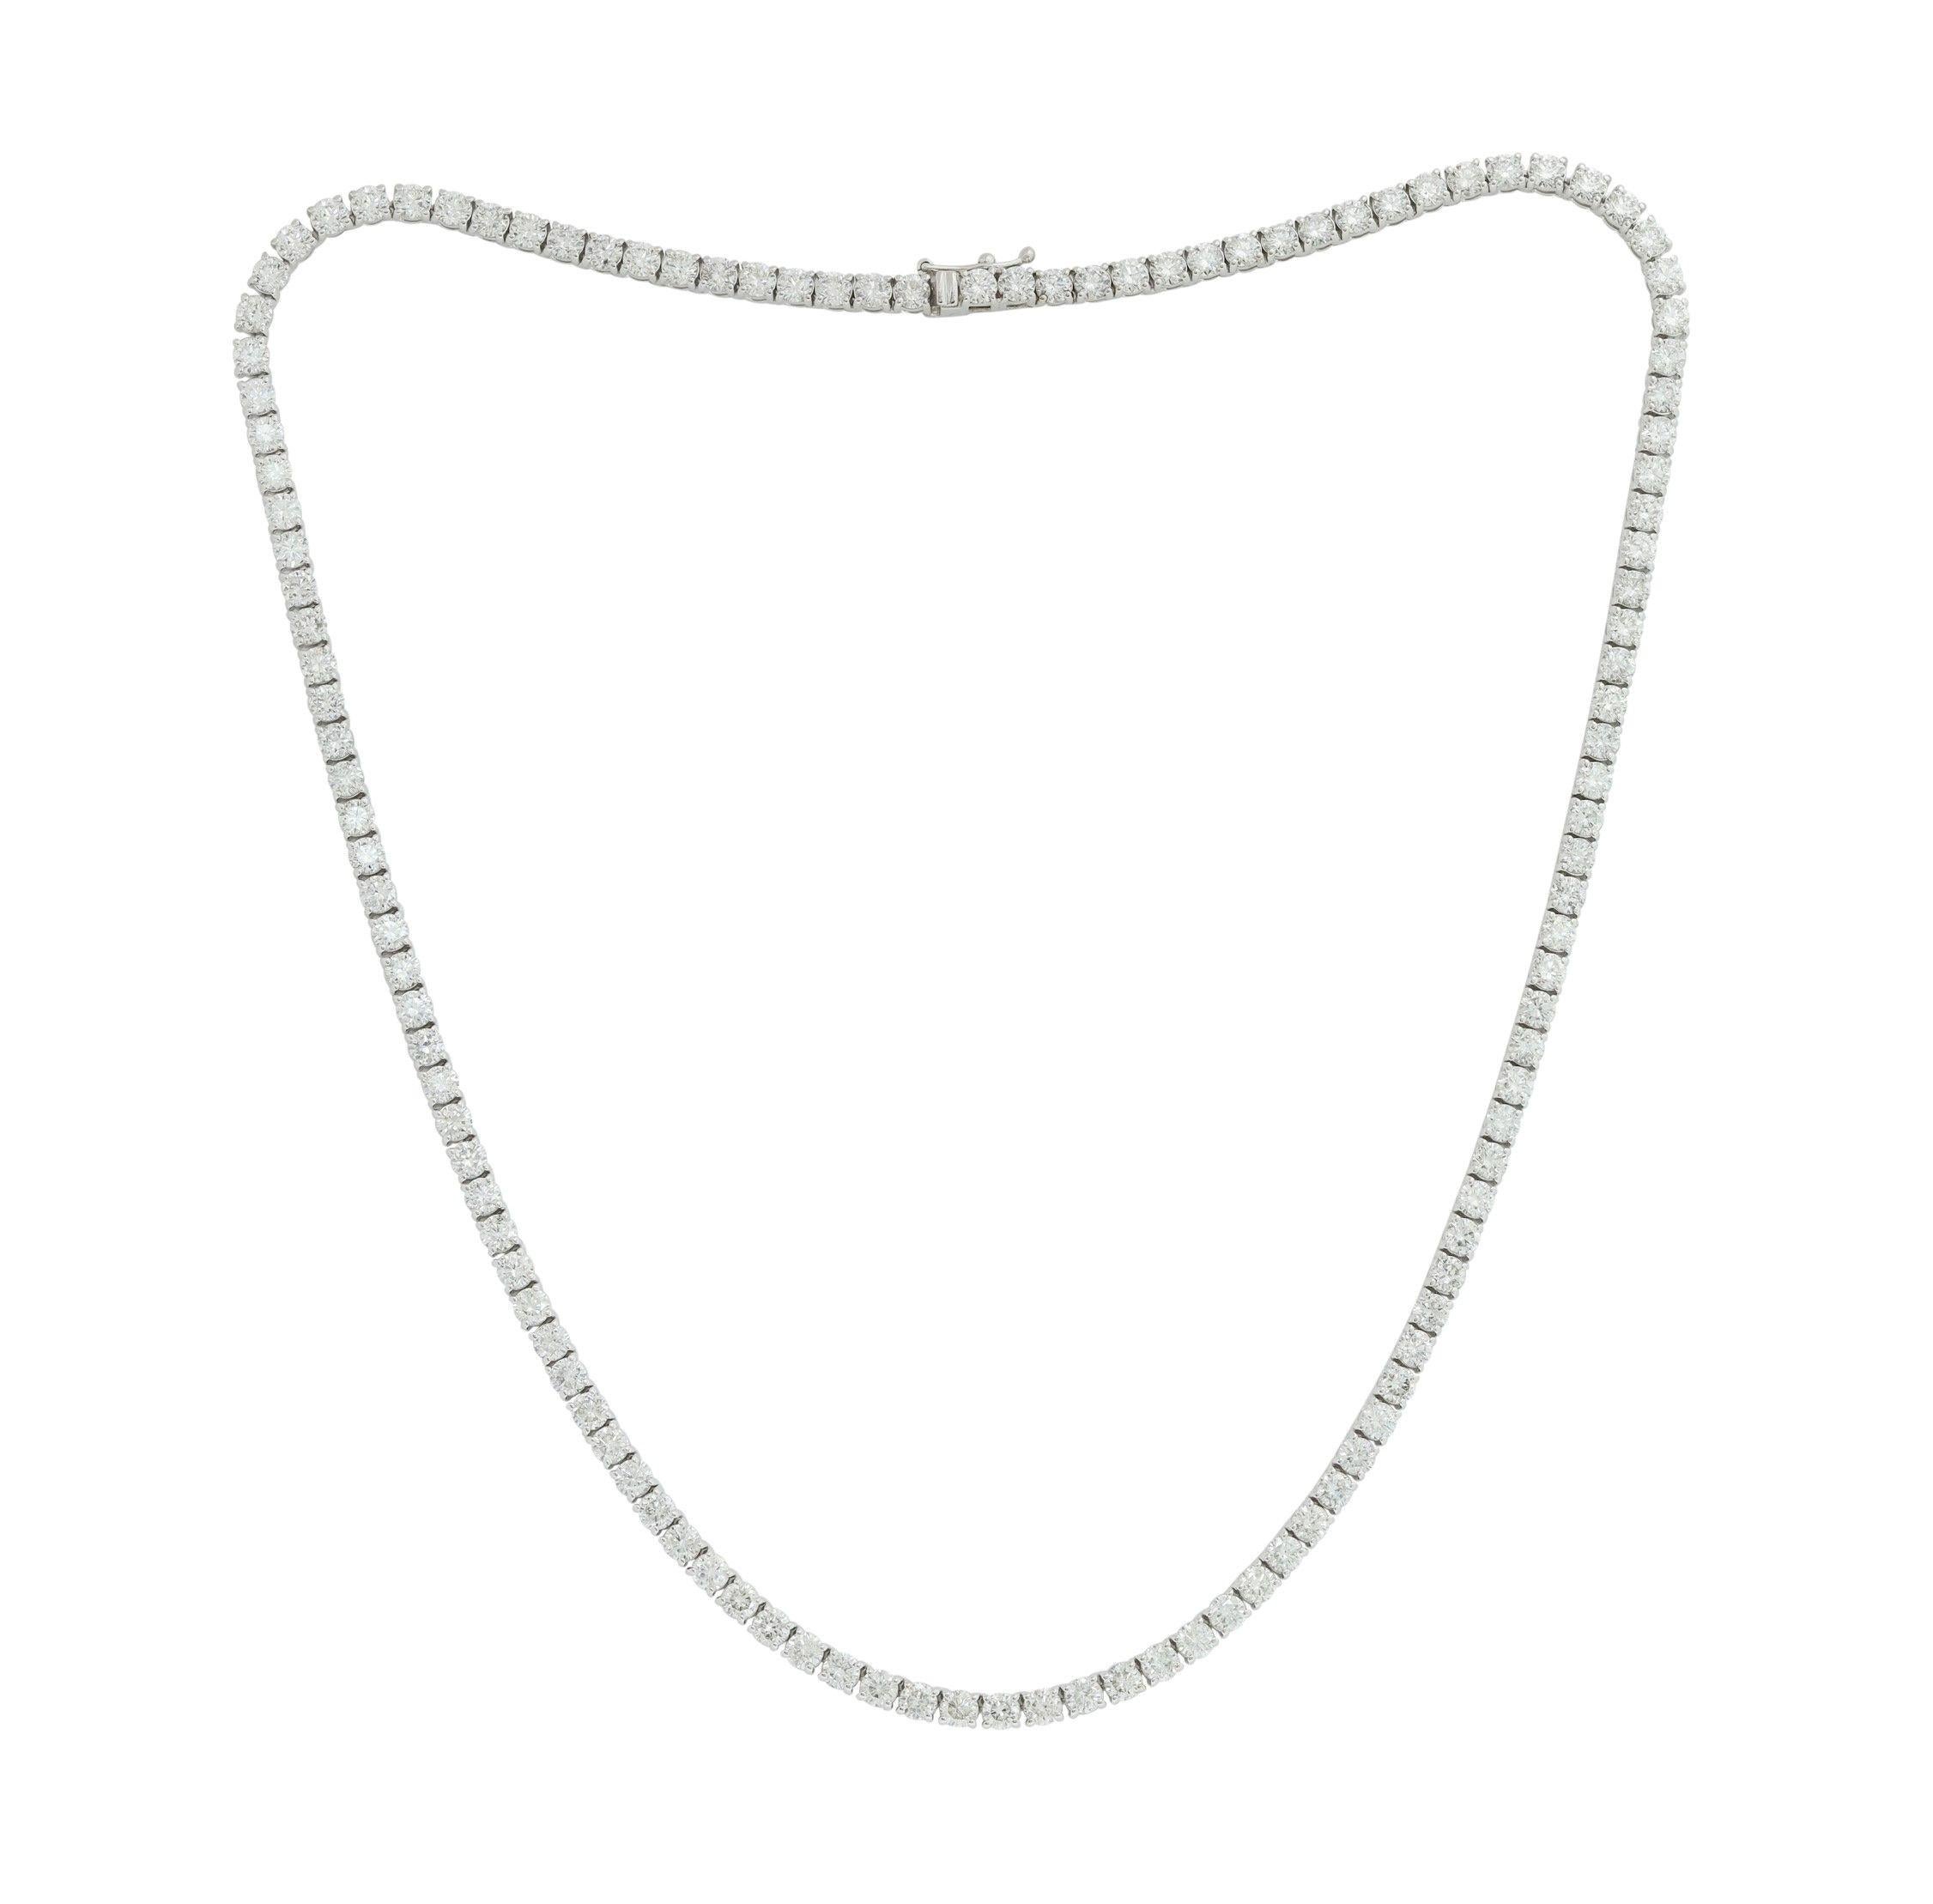 Benutzerdefinierte 14 k Weißgold 4 Zacken Diamant Tennis Halskette 11,45 cts  runde Diamanten 156 Steine je 0,07 Farbe GH SI Reinheit. Ausgezeichneter Schnitt
